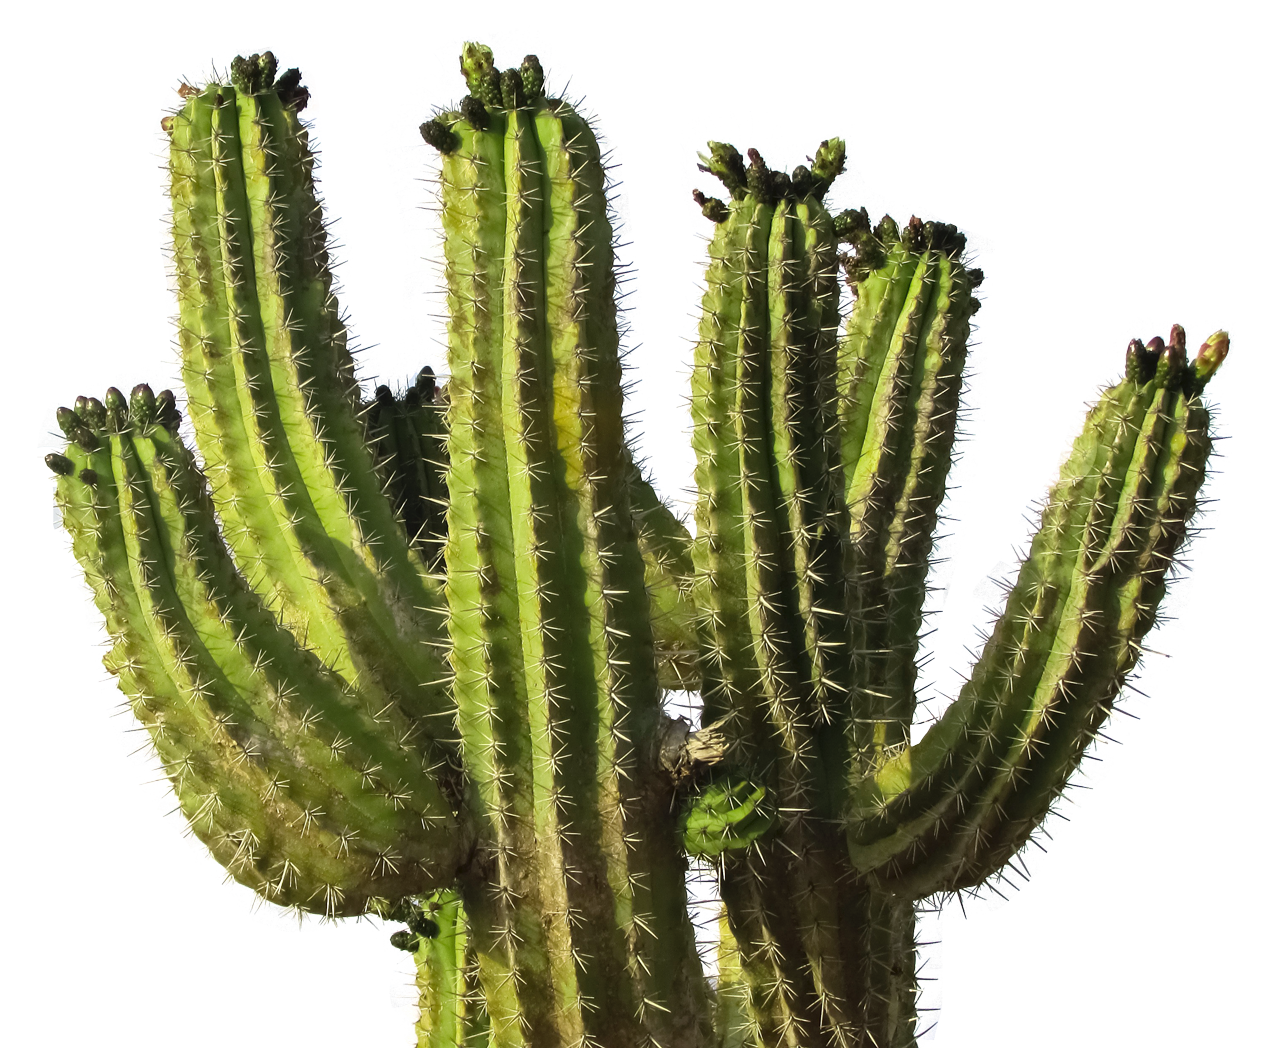 Cactus Desert Plant